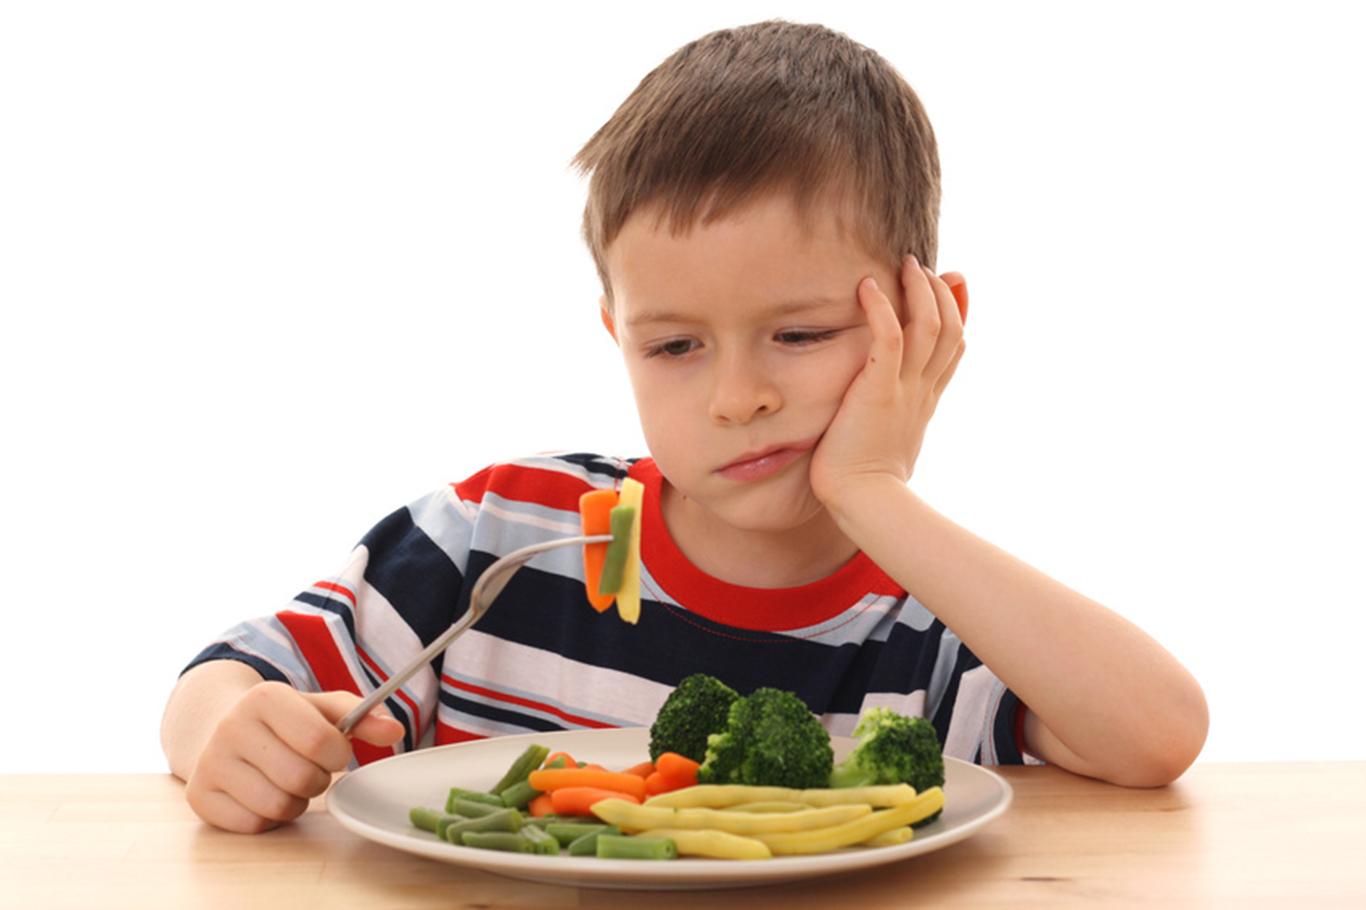 "Doğru beslenme alışkanlıkları çocukken öğretilmeli"